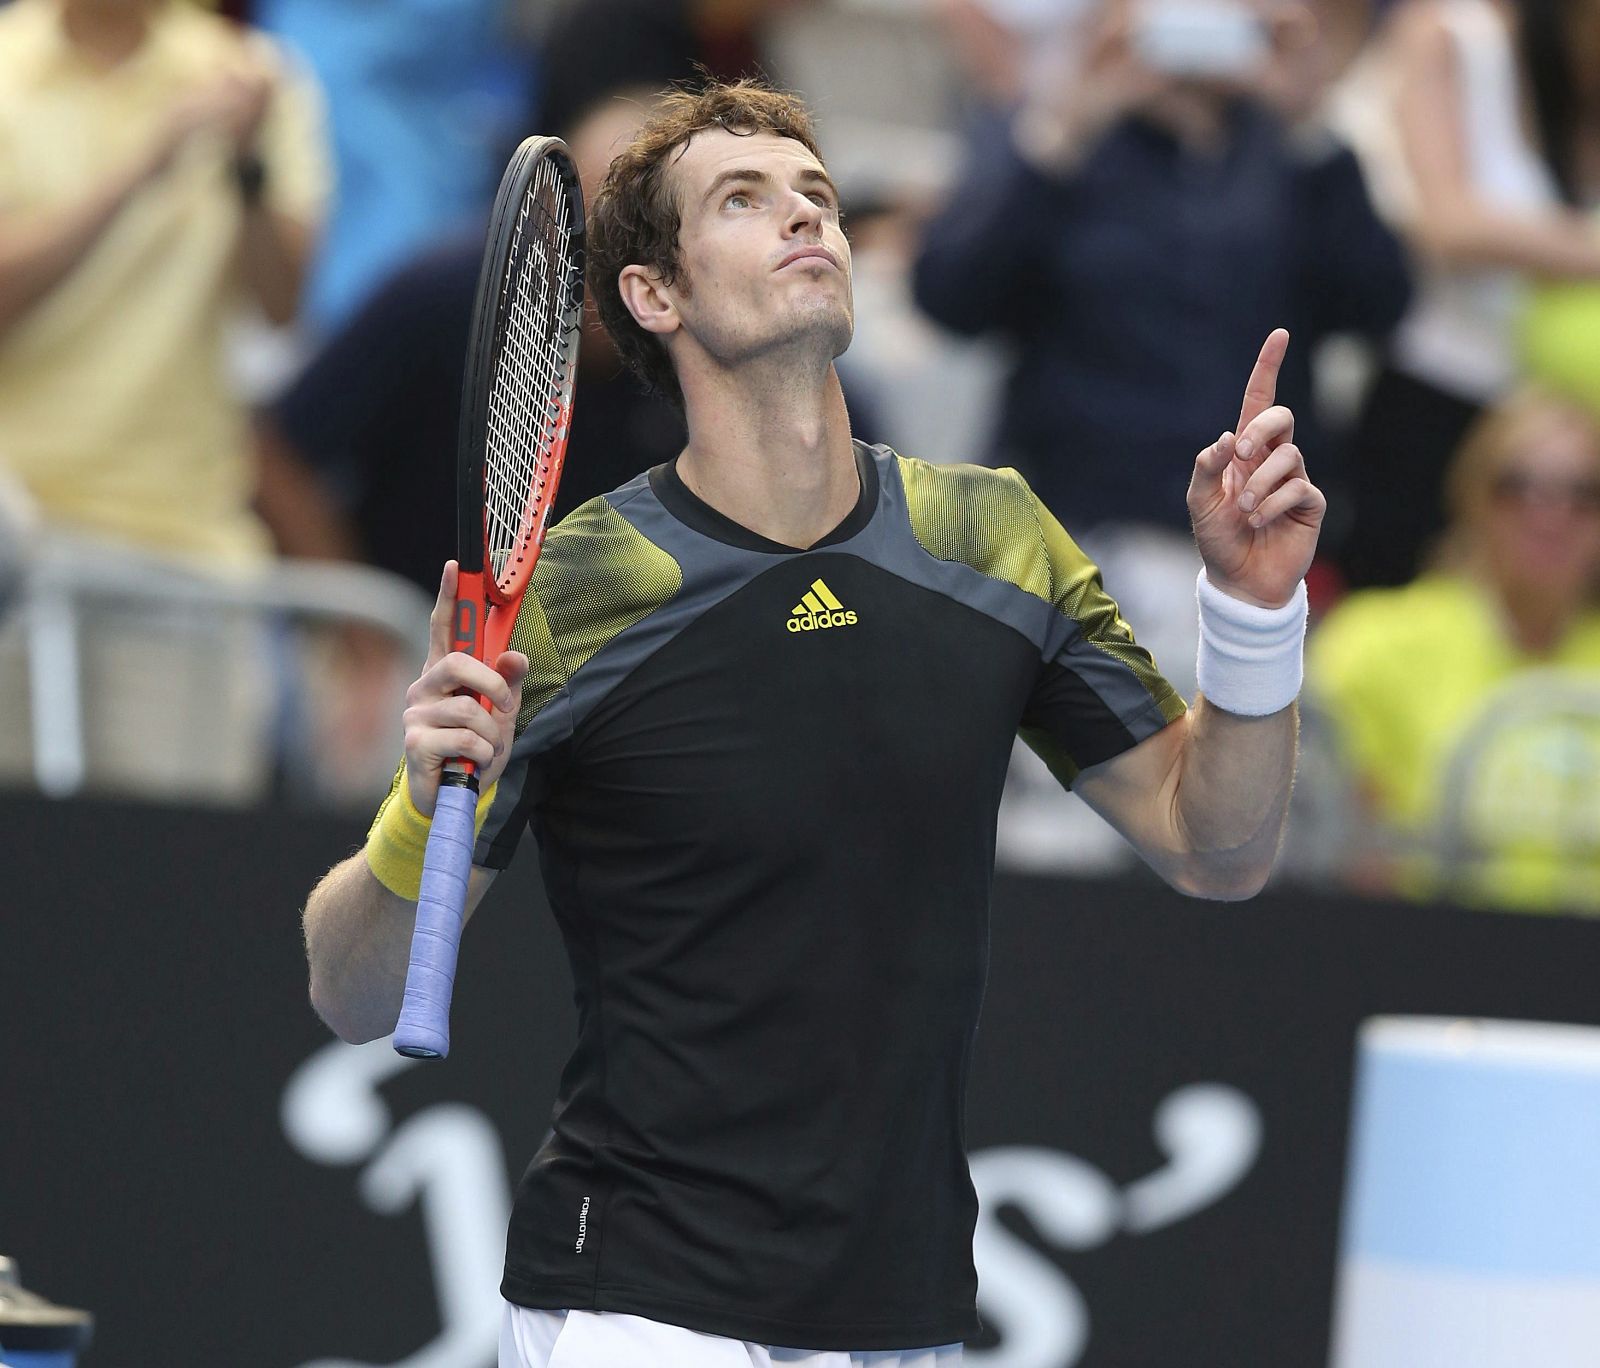 El tenista británico Andy Murray celebra su victoria ante el francés Gilles Simon en el Open de Australia